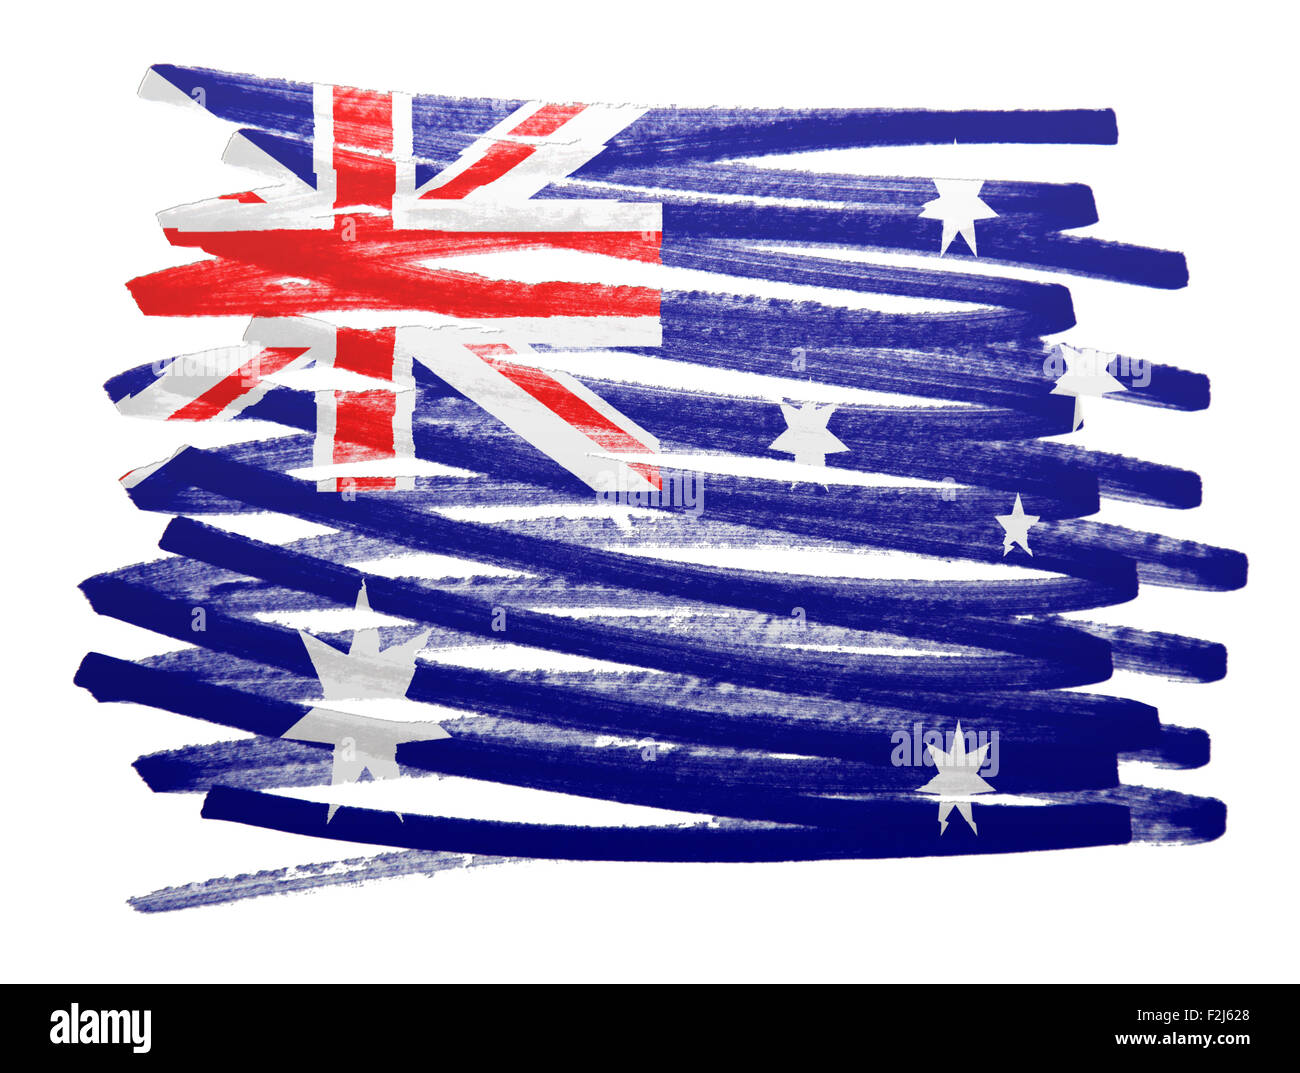 Abbildung der Flagge gemacht mit Stift - Australien Stockfoto